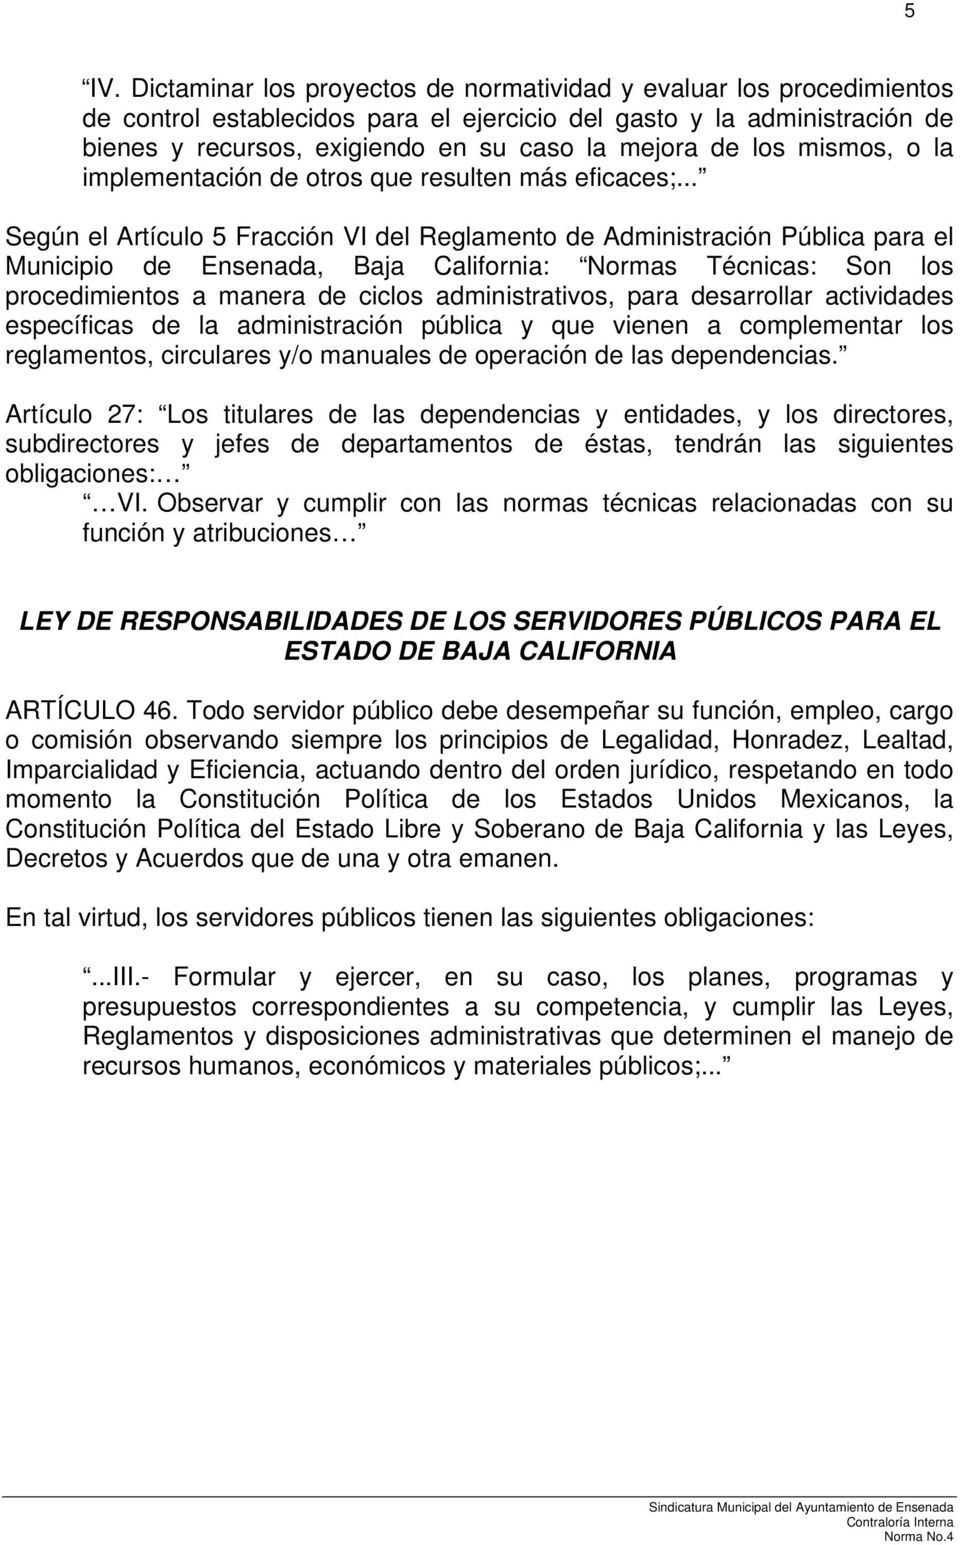 .. Según el Artículo 5 Fracción VI del Reglamento de Administración Pública para el Municipio de Ensenada, Baja California: Normas Técnicas: Son los procedimientos a manera de ciclos administrativos,